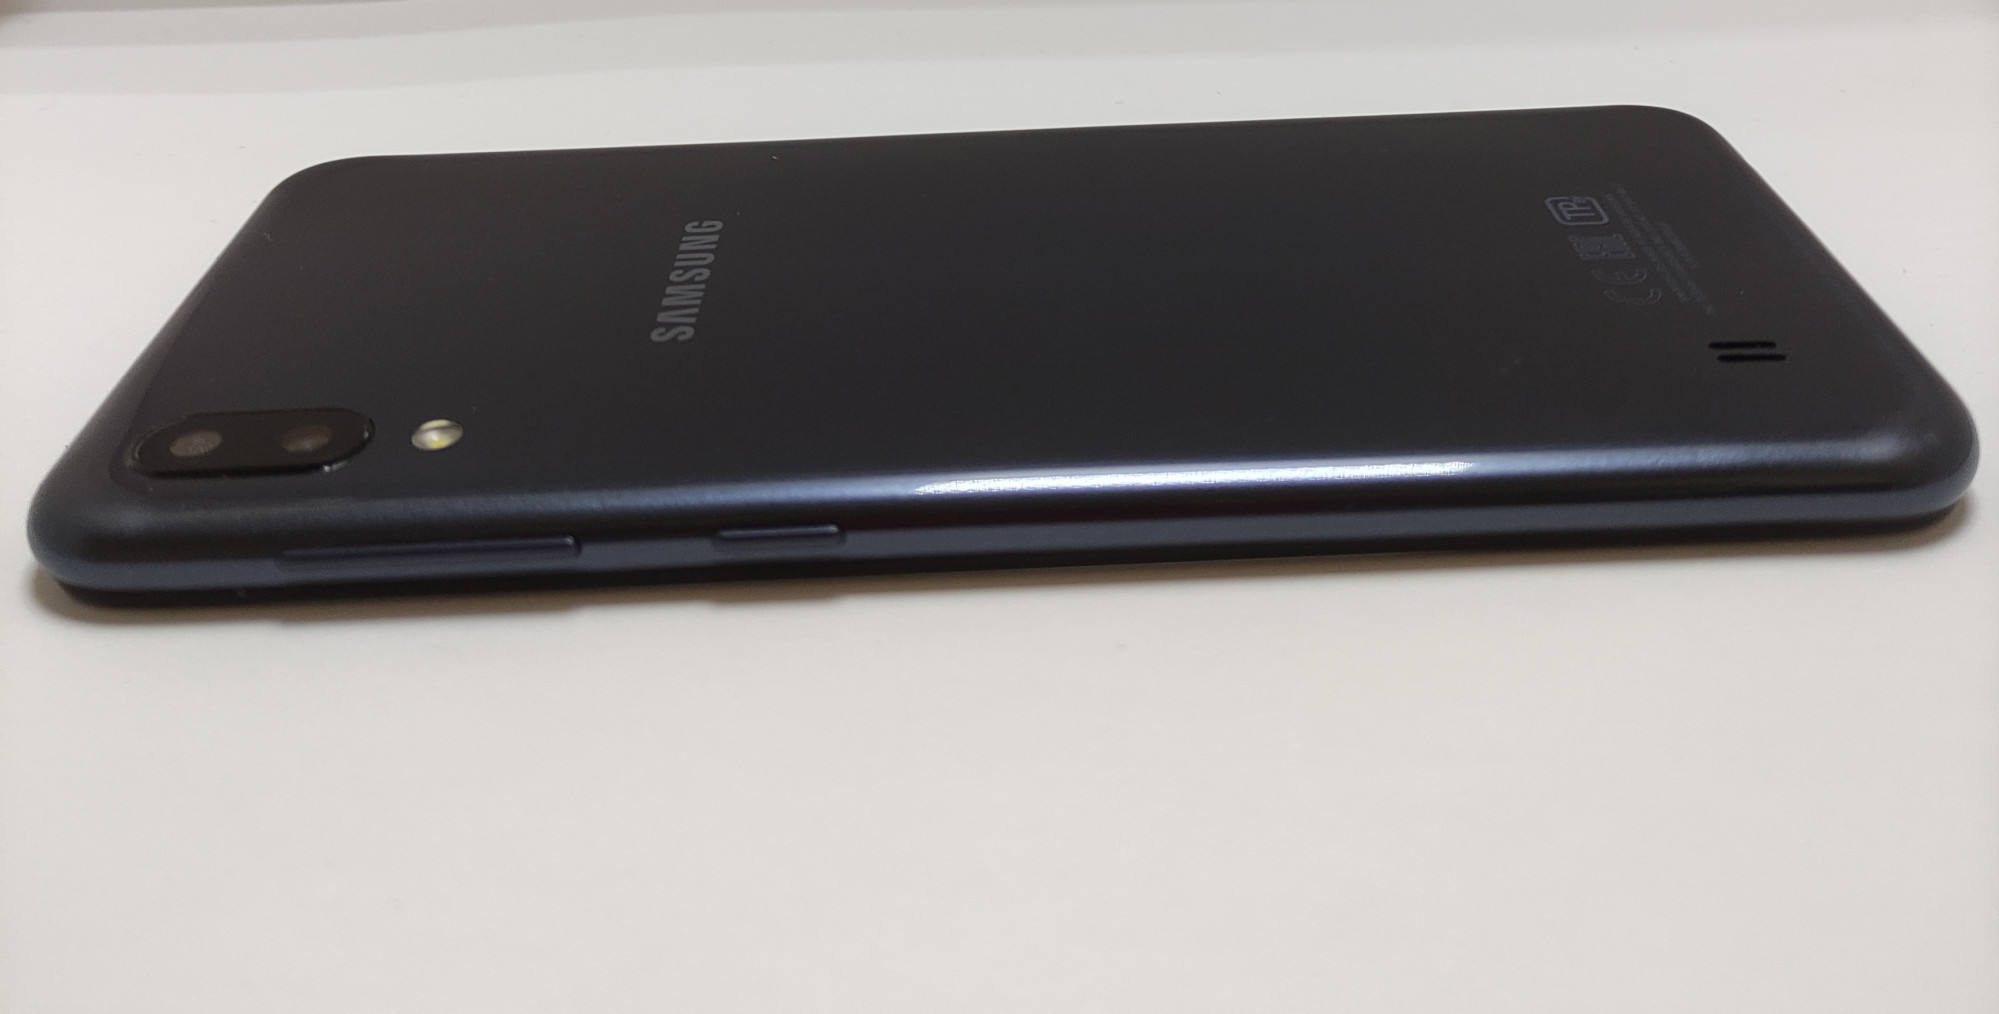 Samsung Galaxy M10 2019 (SM-M105G) 2/16Gb 4